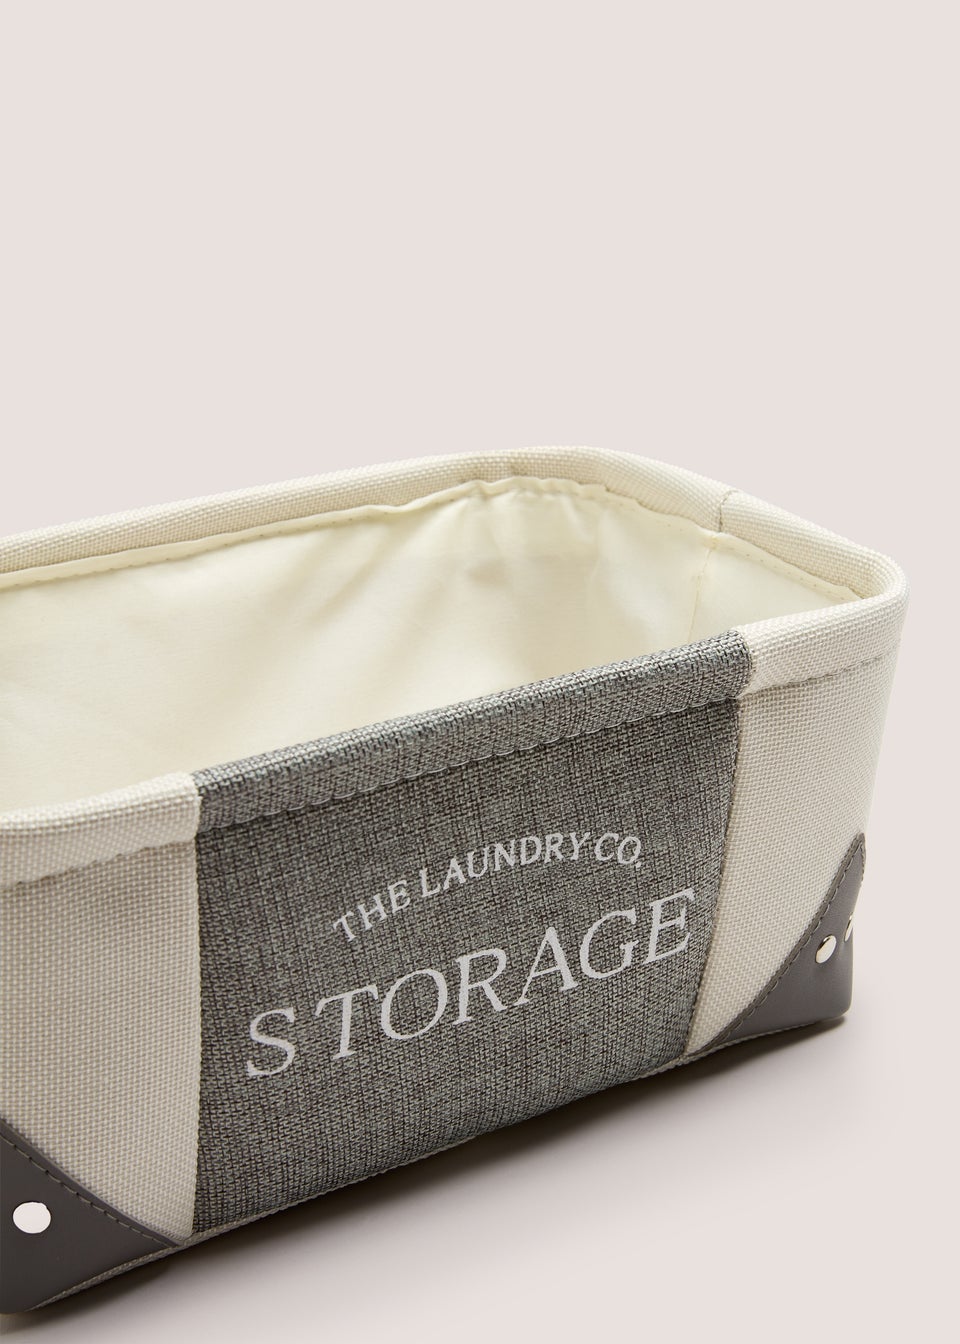 Laundry Co Grey Fabric Storage (55x30x13cm)